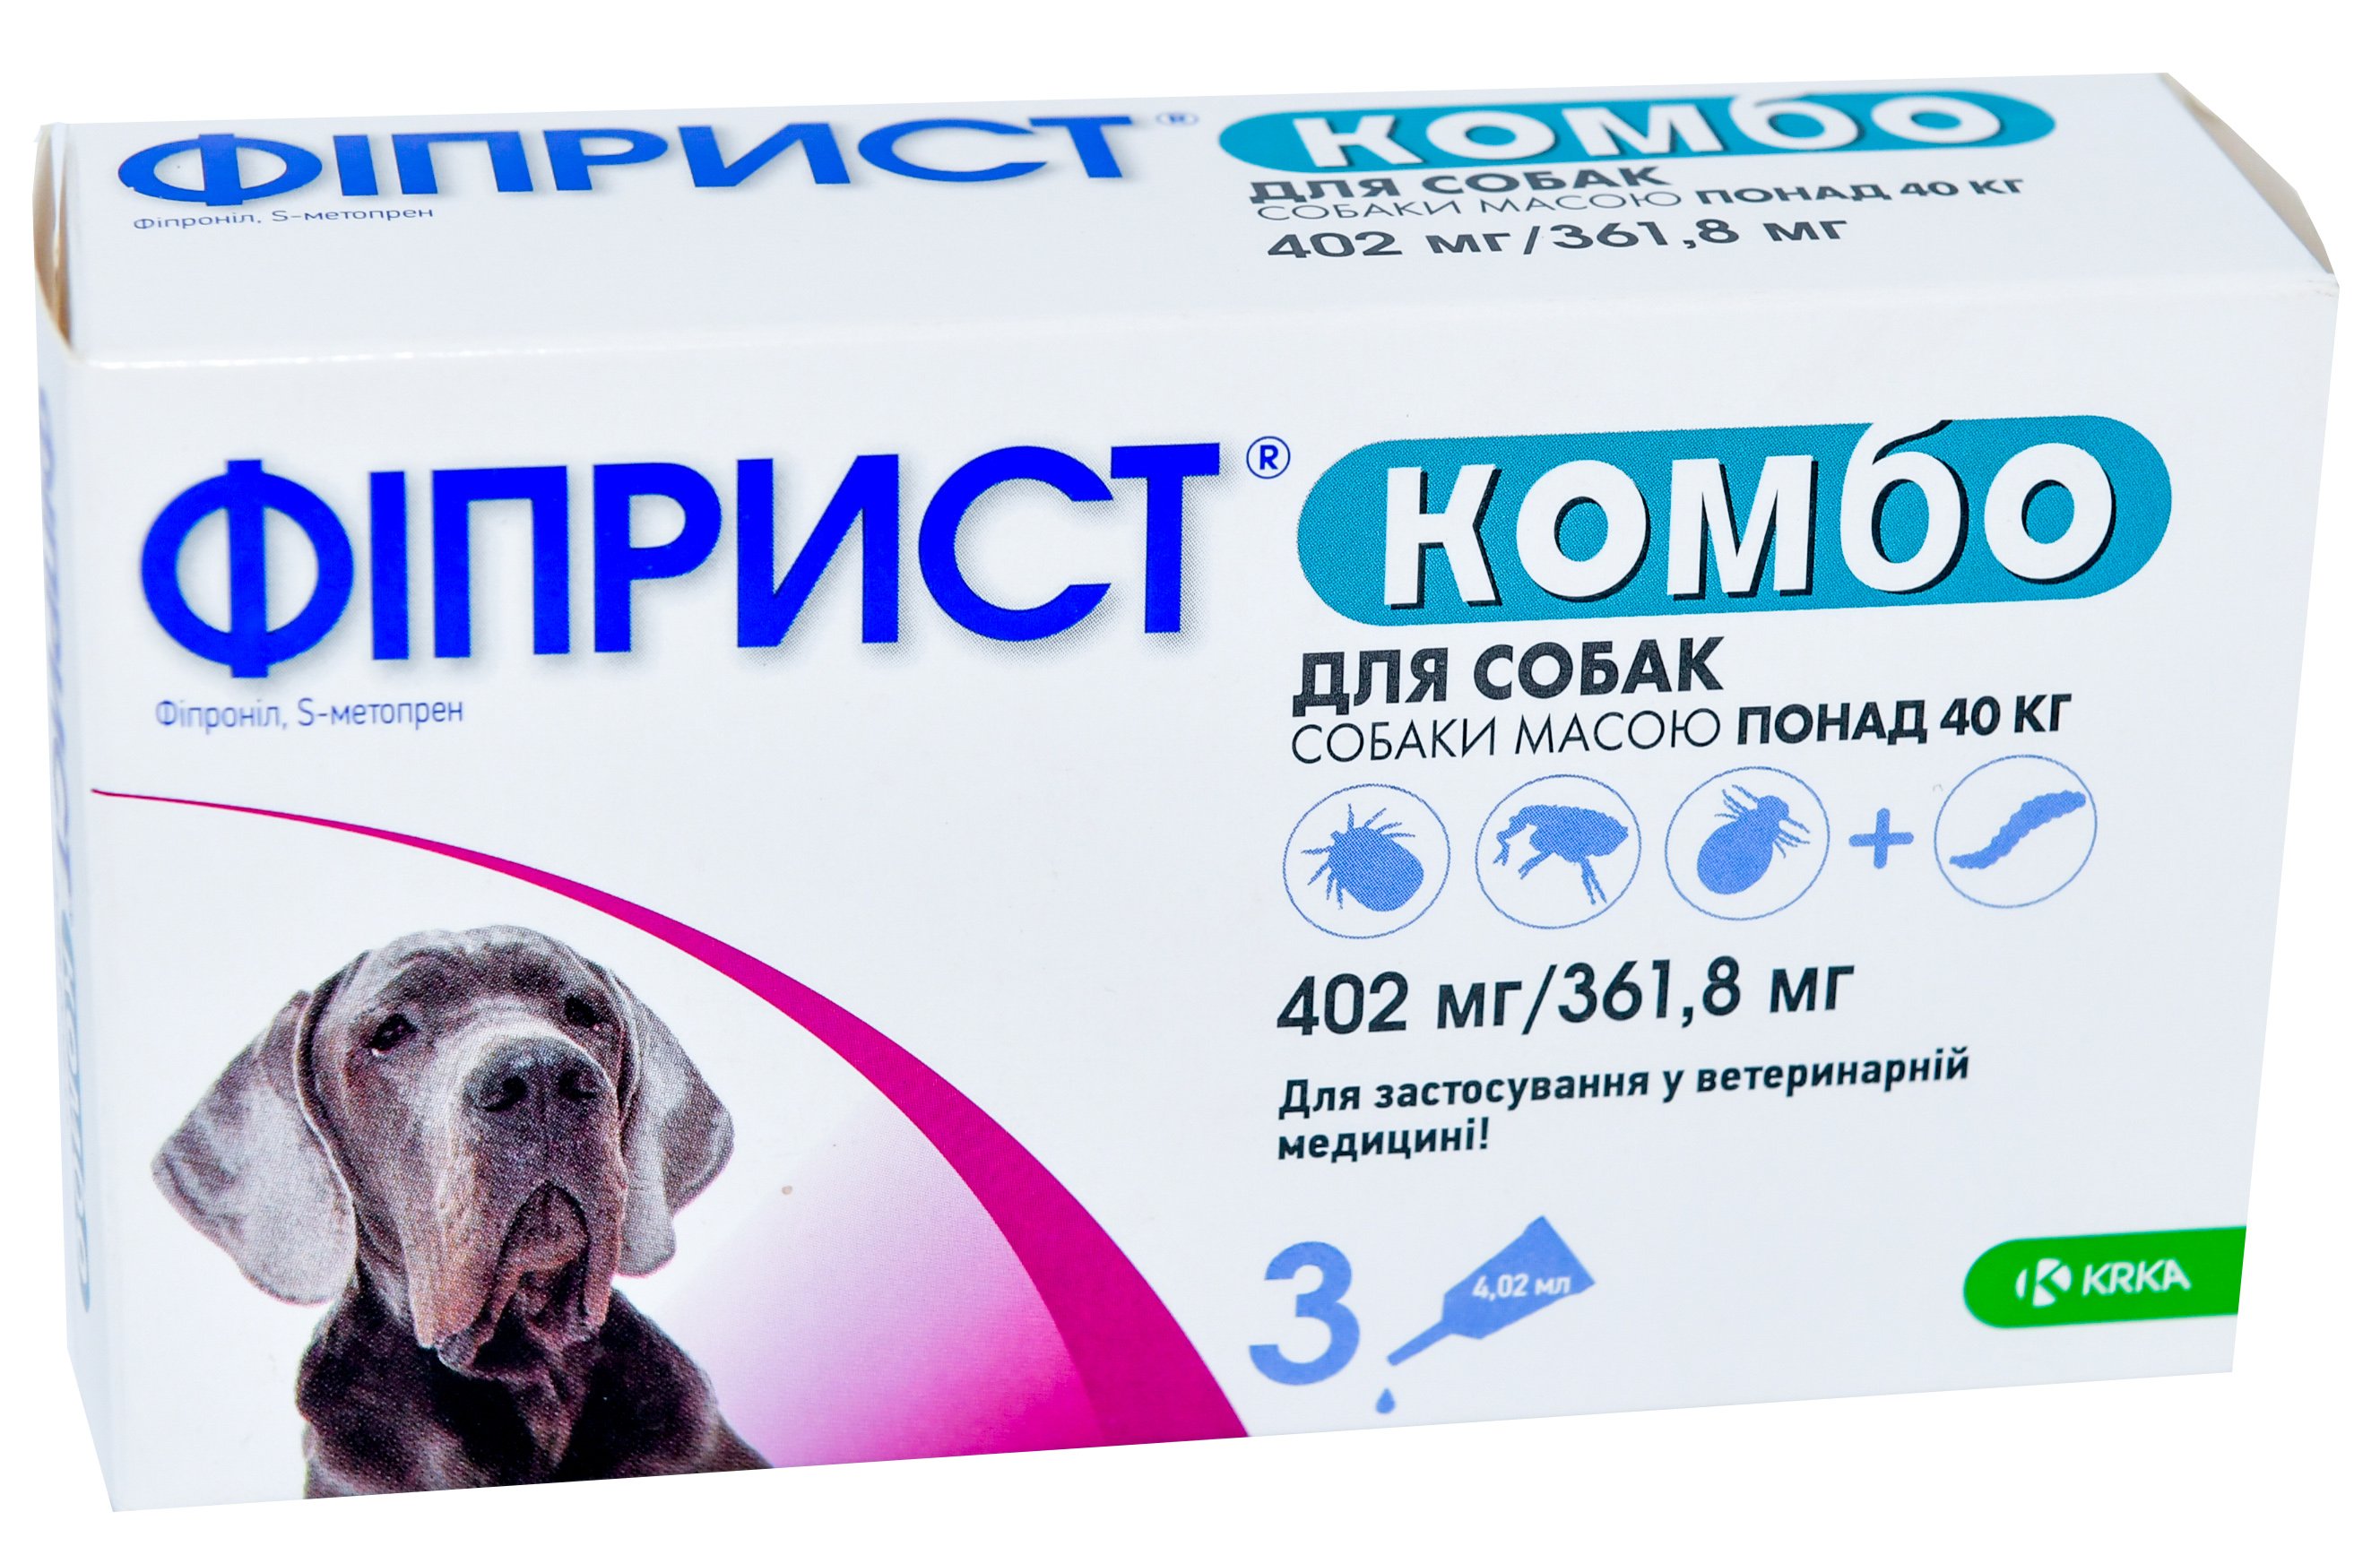 Капли KRKA Фиприст Комбо от блох, вшей, власоедов и клещей для собак массой тела 40-60 кг, 3 пипетки - фото 1